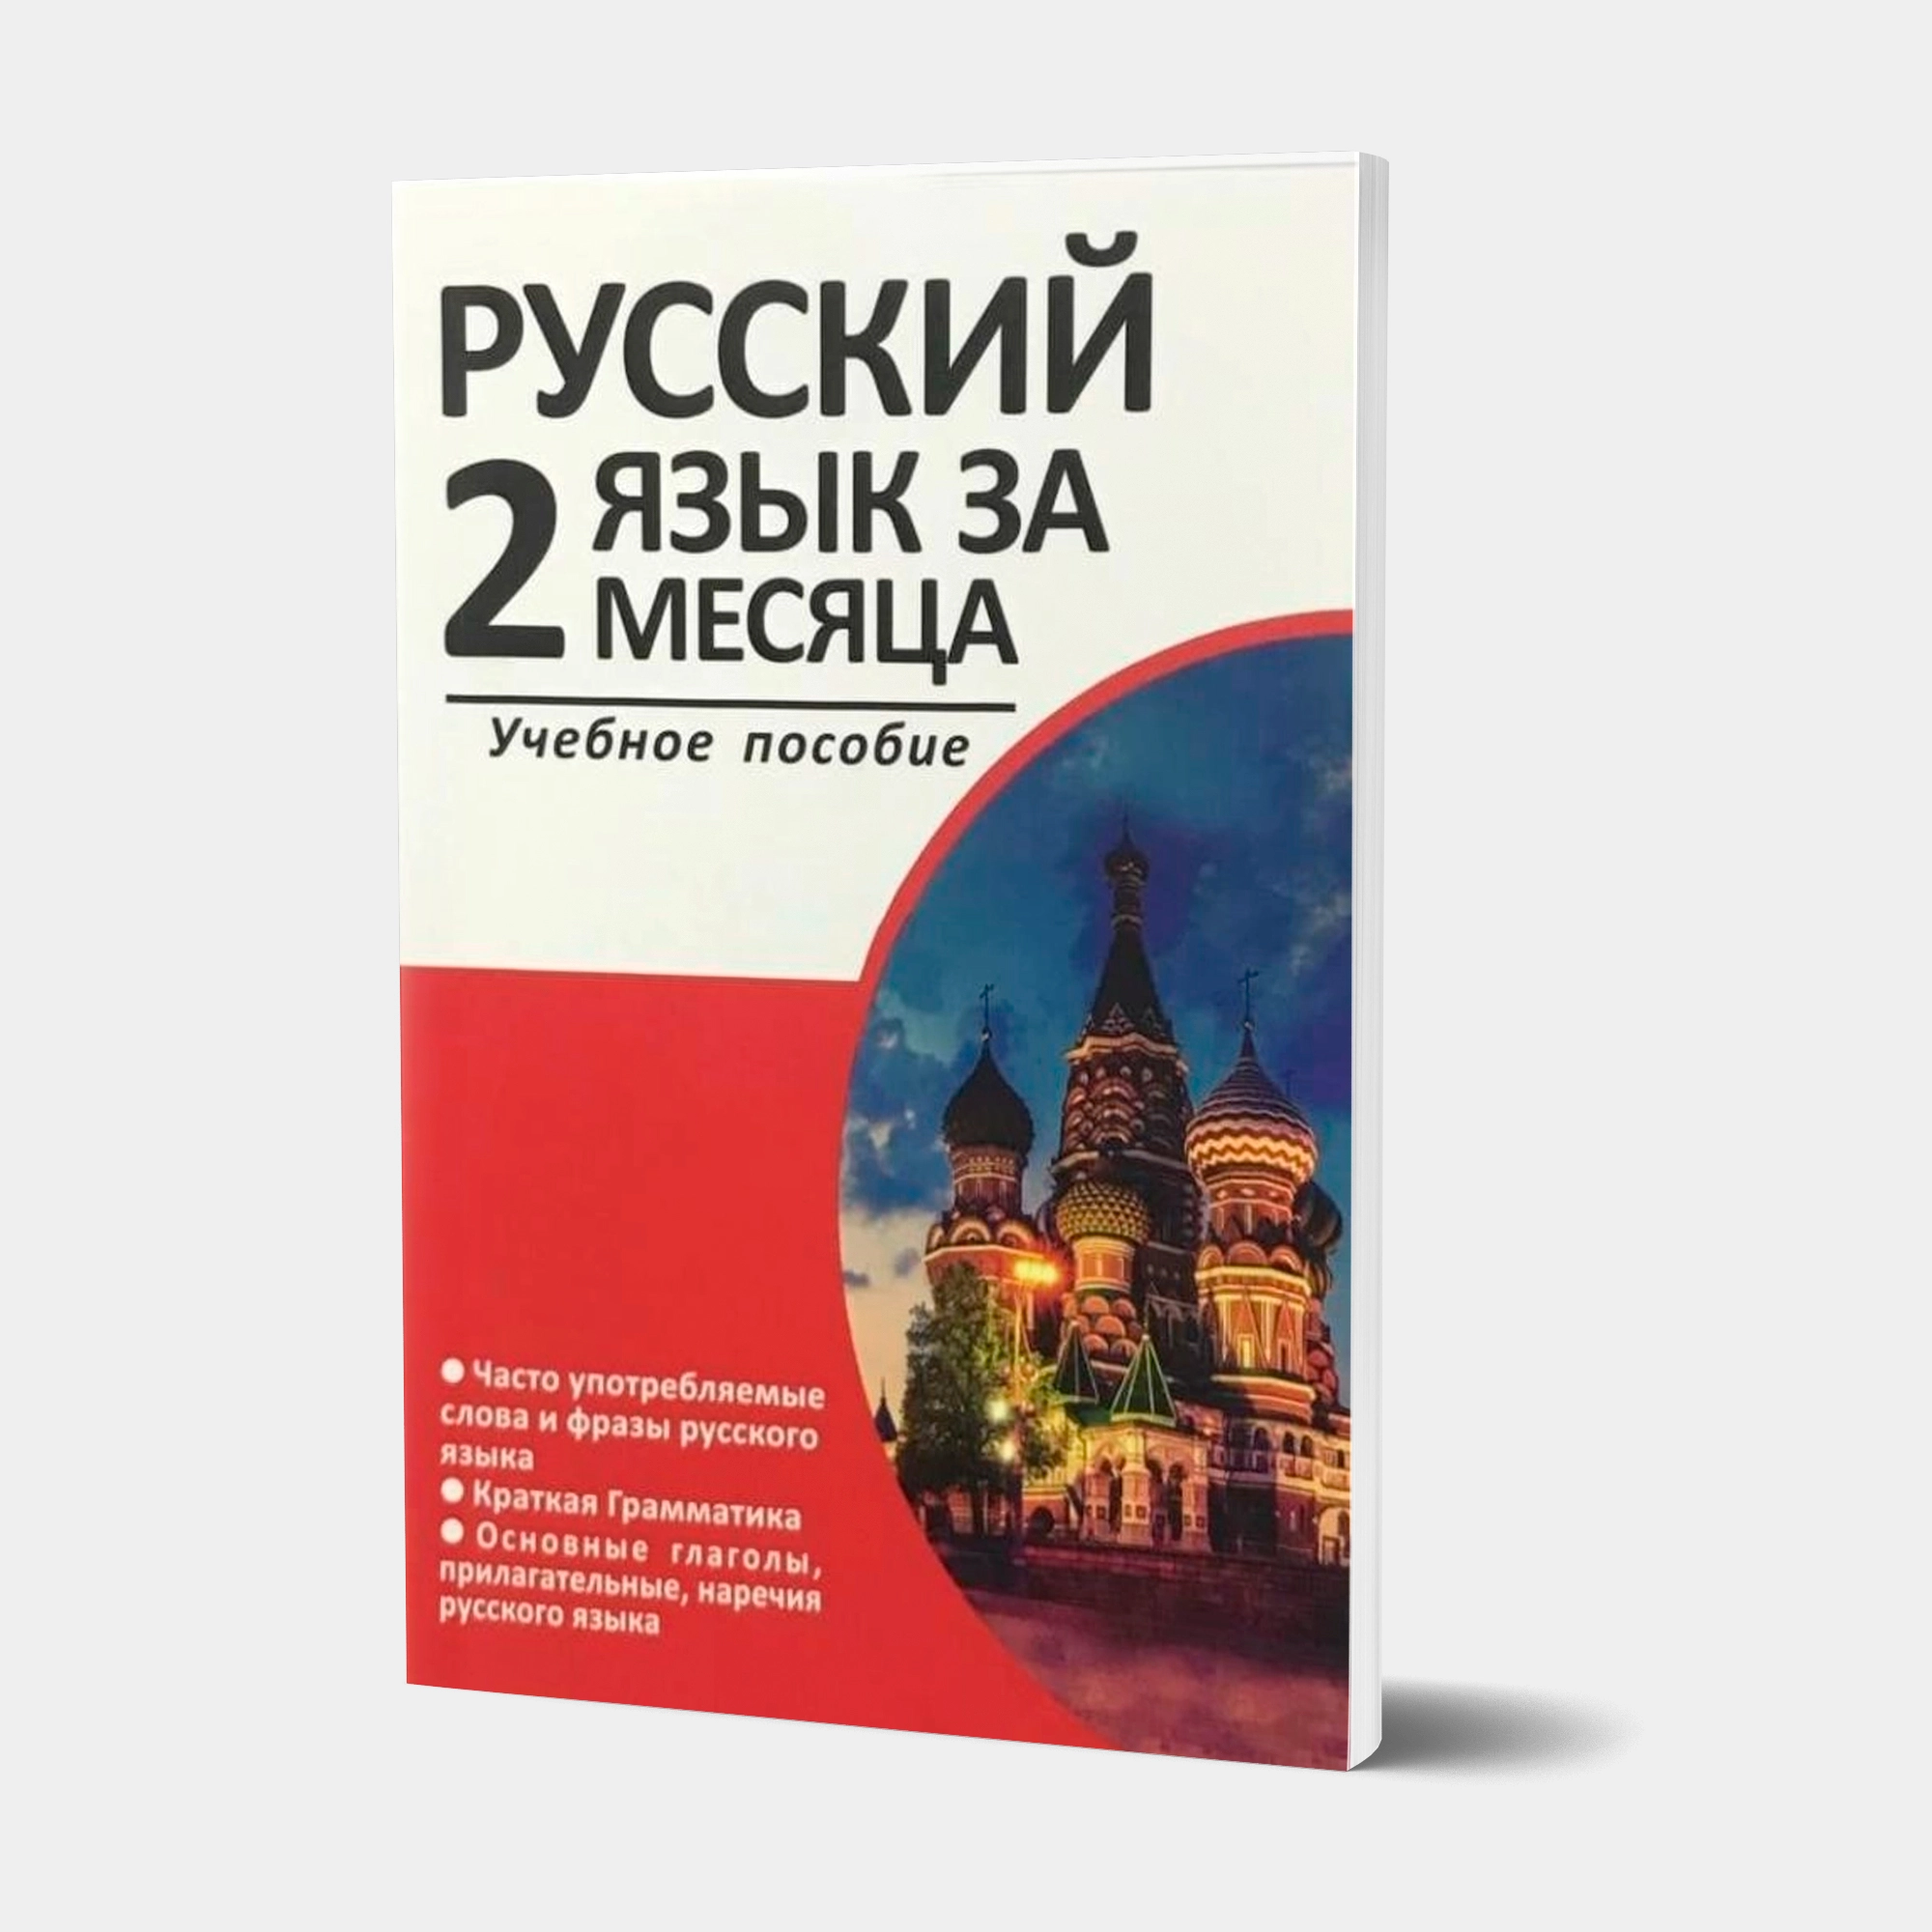 Русский язык за 2 месяца (Rus tili 2 oyda)